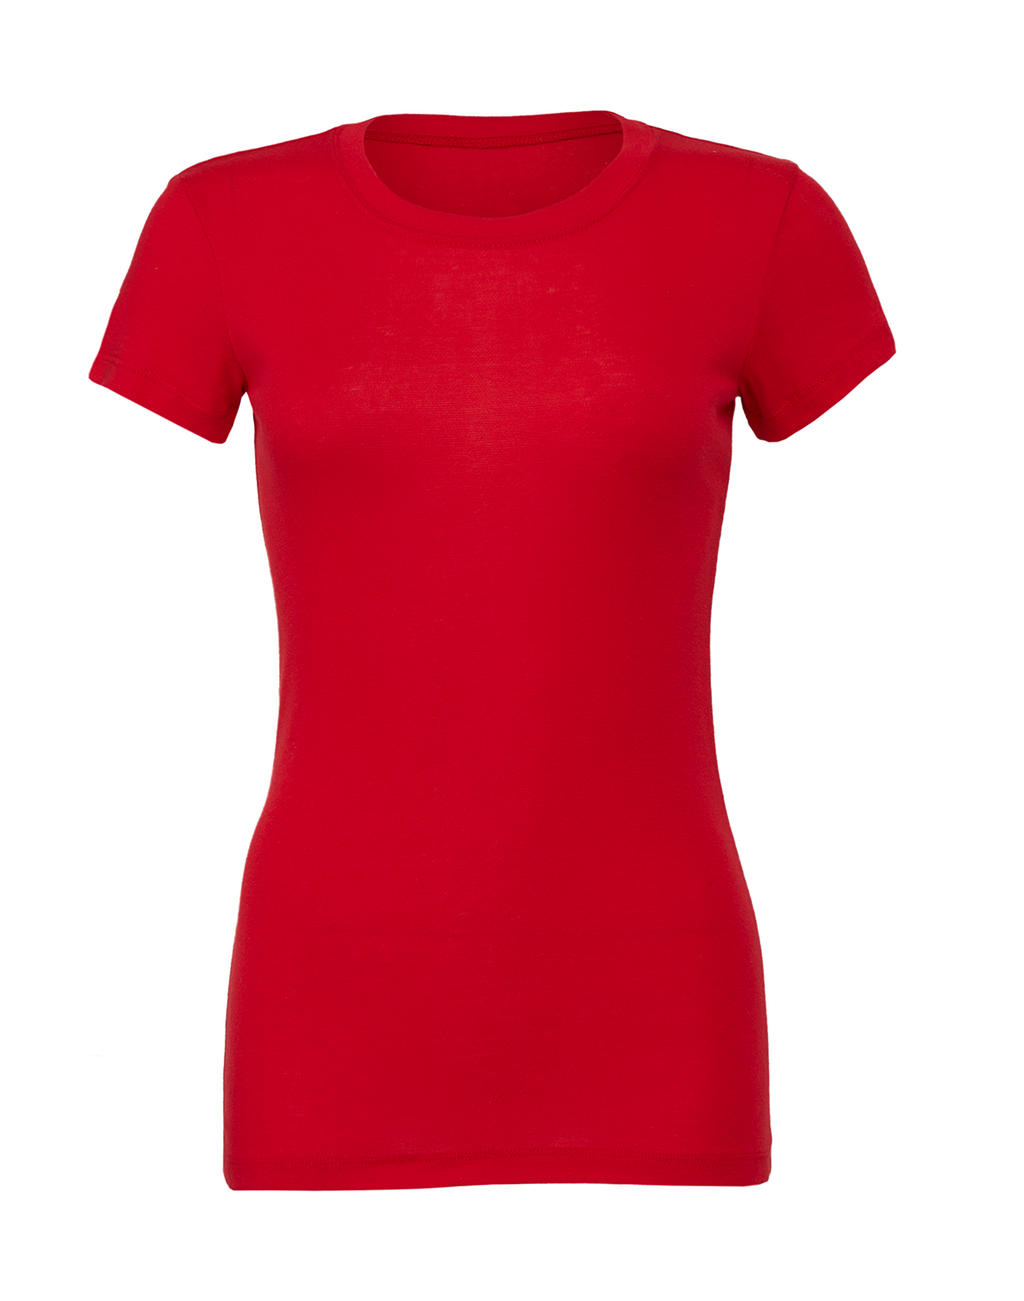 Tričko Women's Slim Fit - red